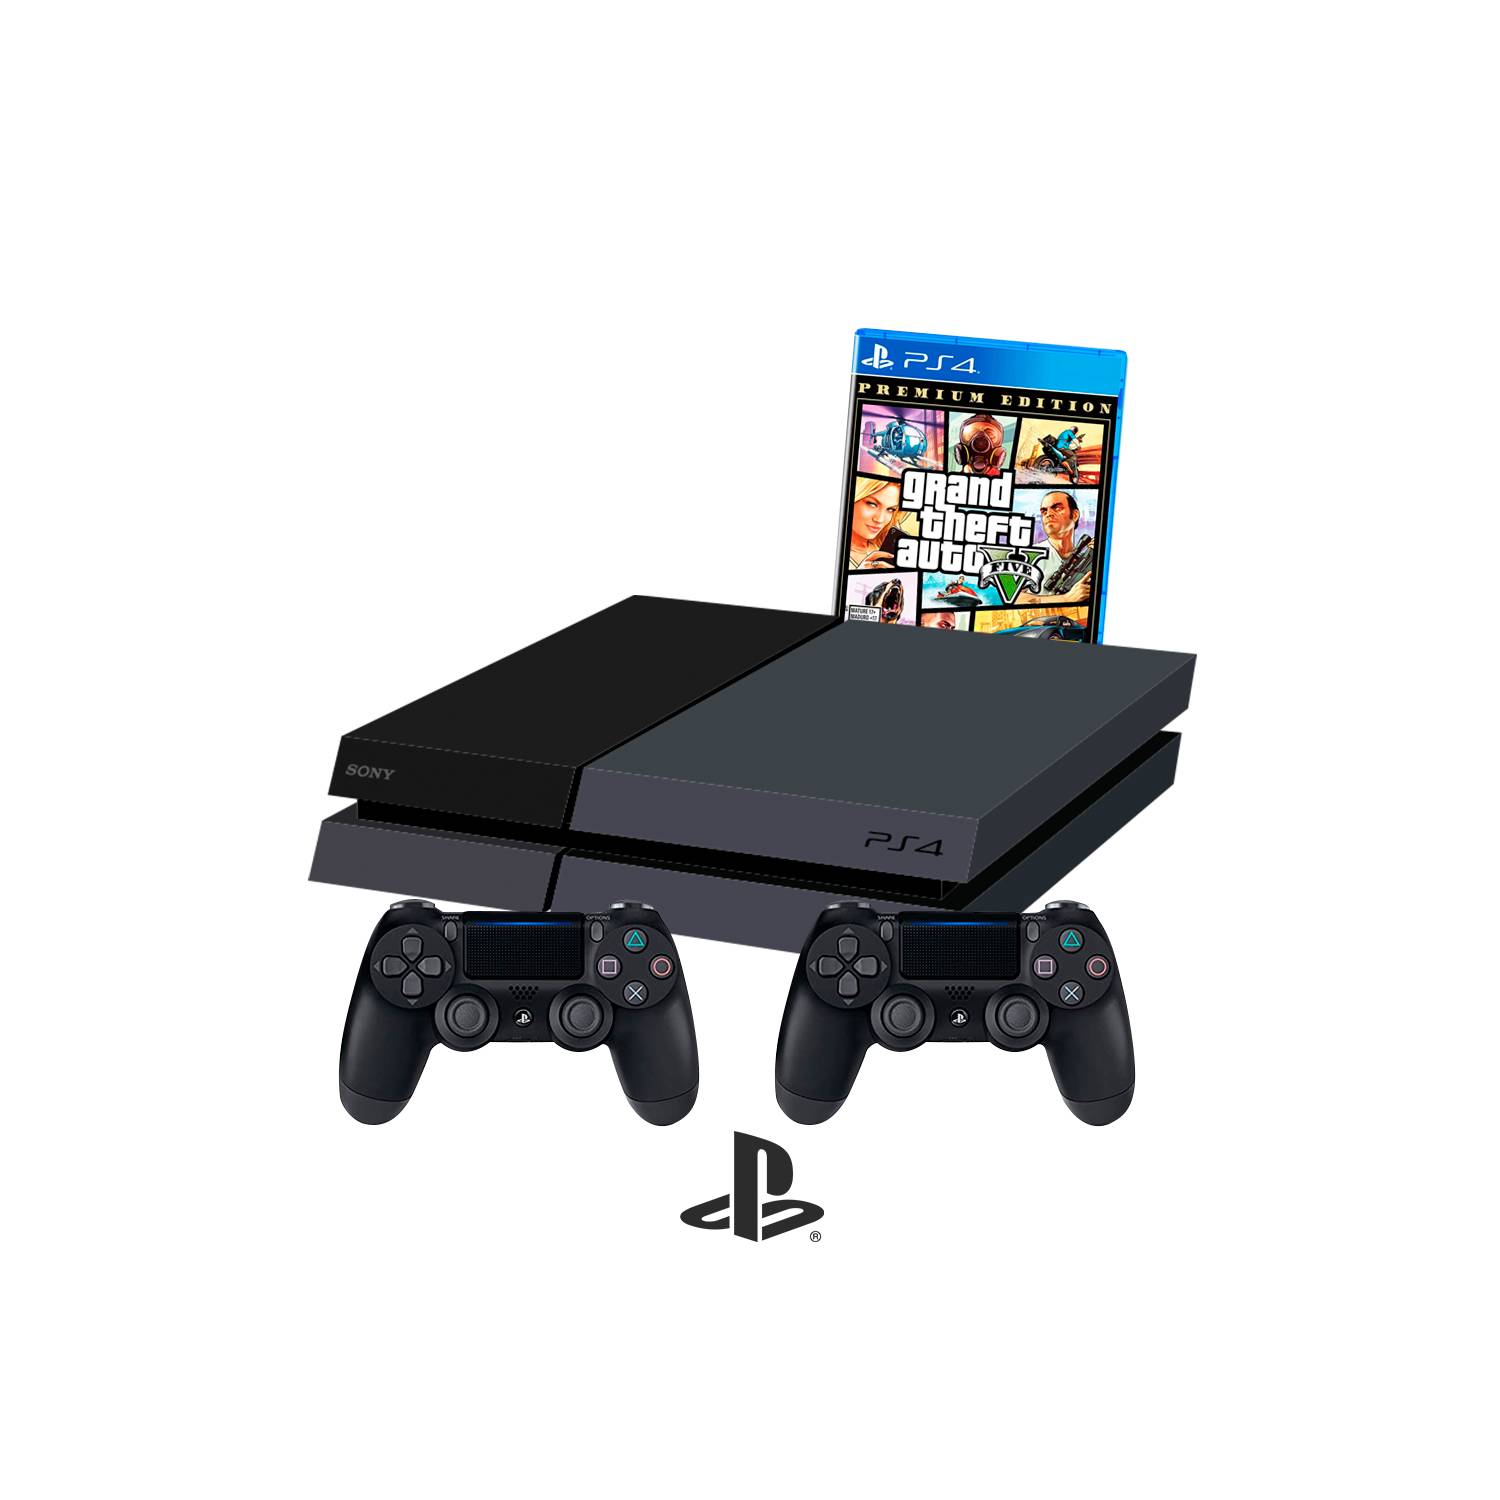 Consola Fat PS4 Playstation 4 sony 500GB con 2 mandos y GTA5 -  Reacondicionada SONY